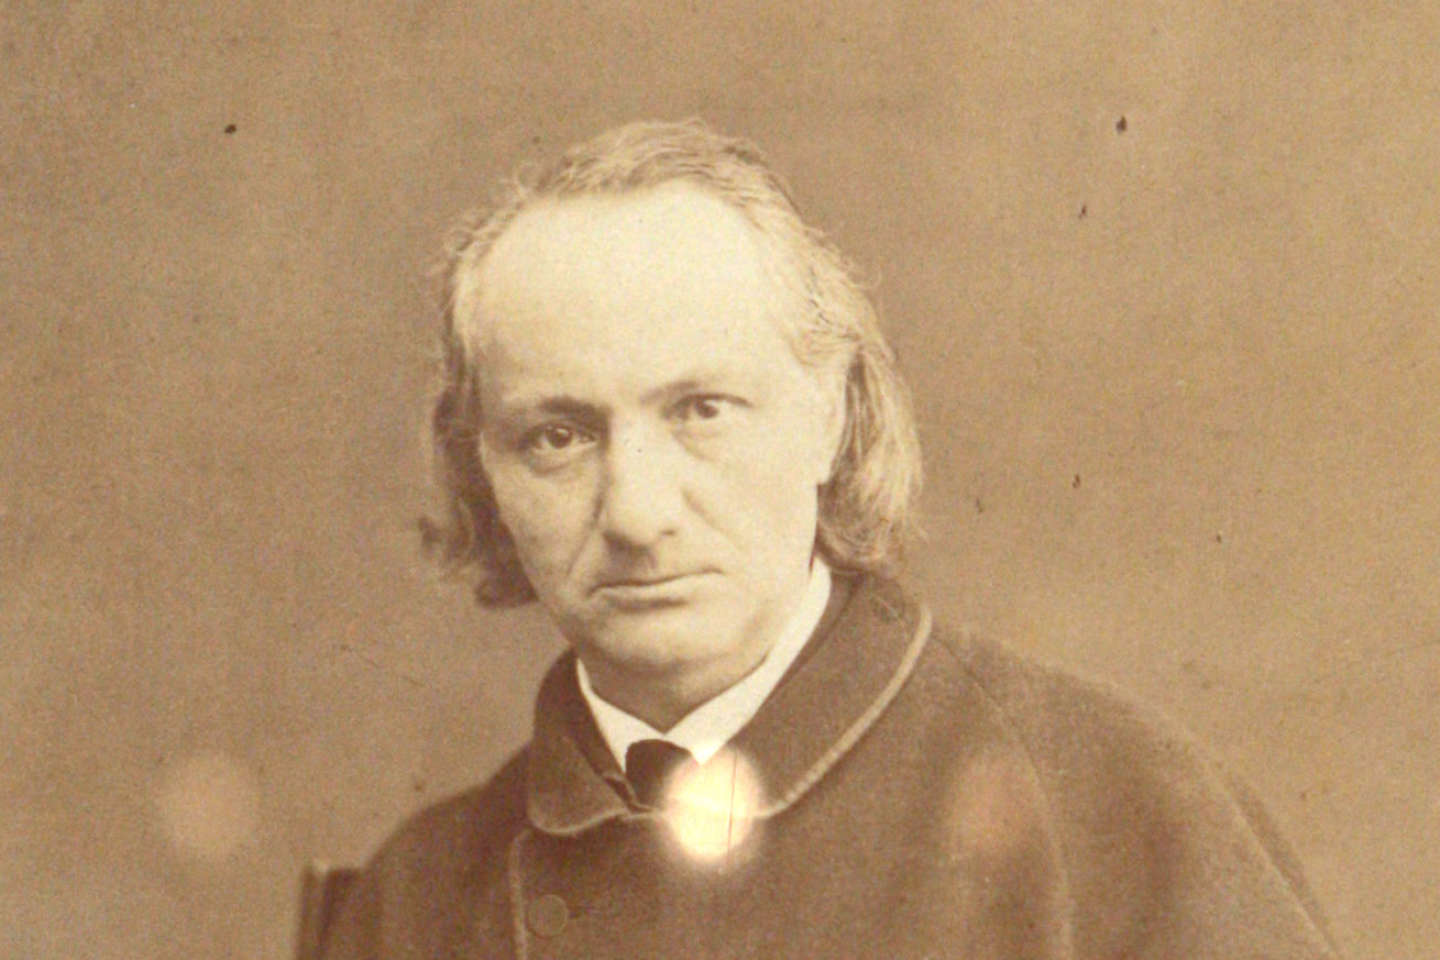 et si Baudelaire avait été confronté aux images créées par Midjourney ?